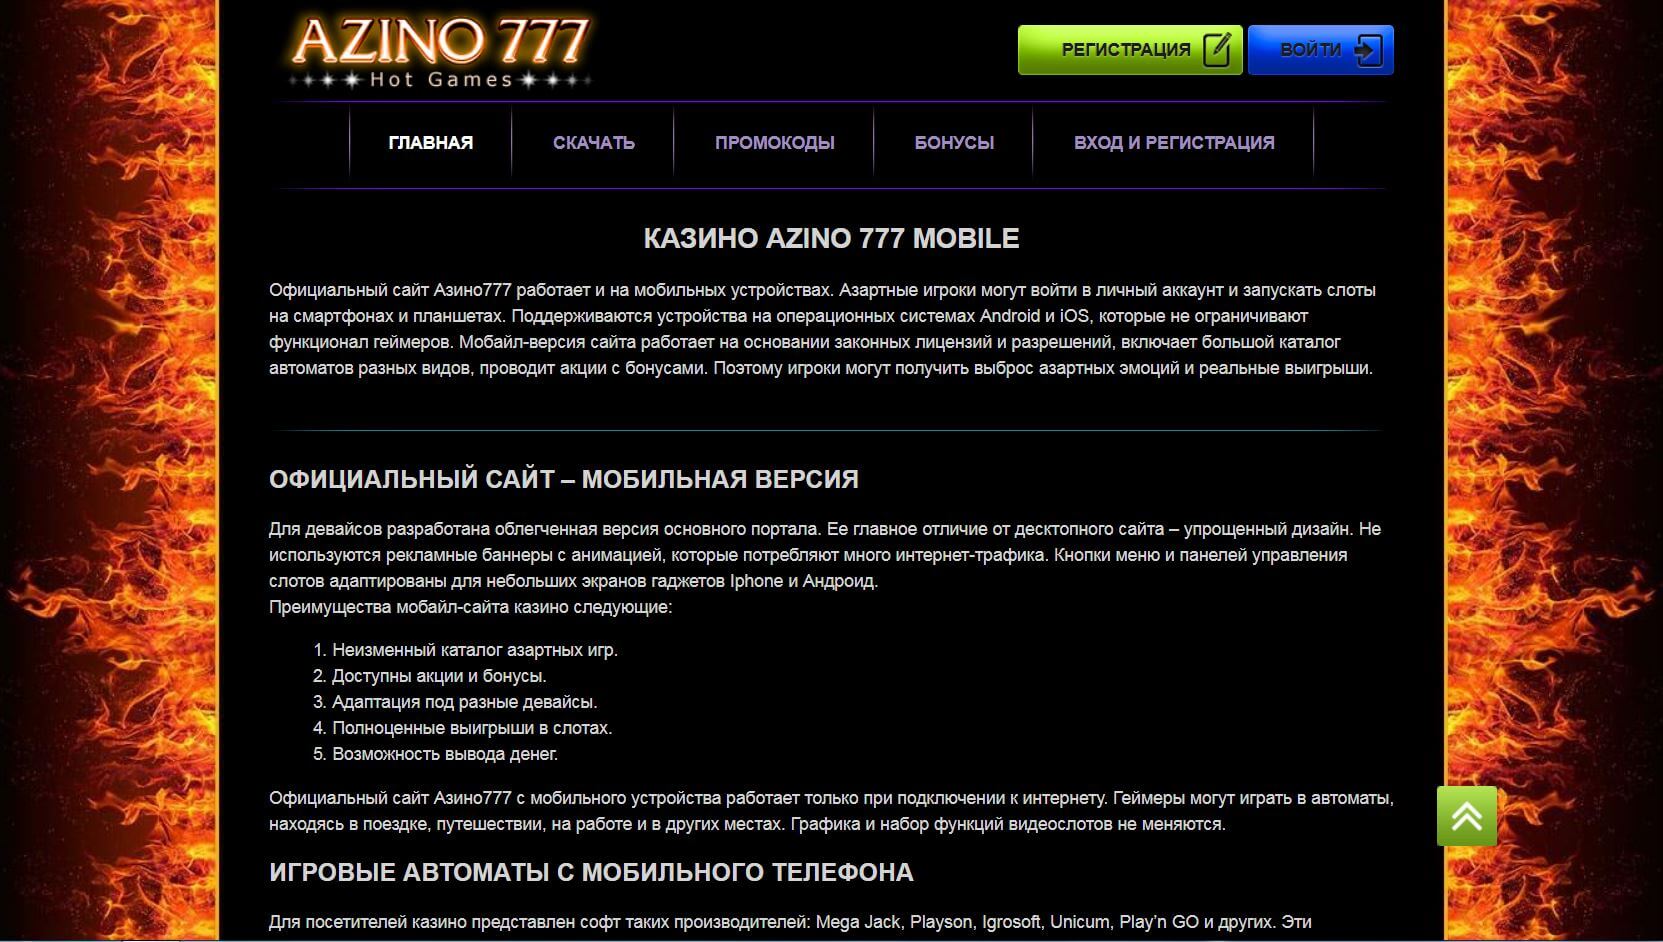 Azino777 casino azino777 mobile fun. Азино777 вывод денег.